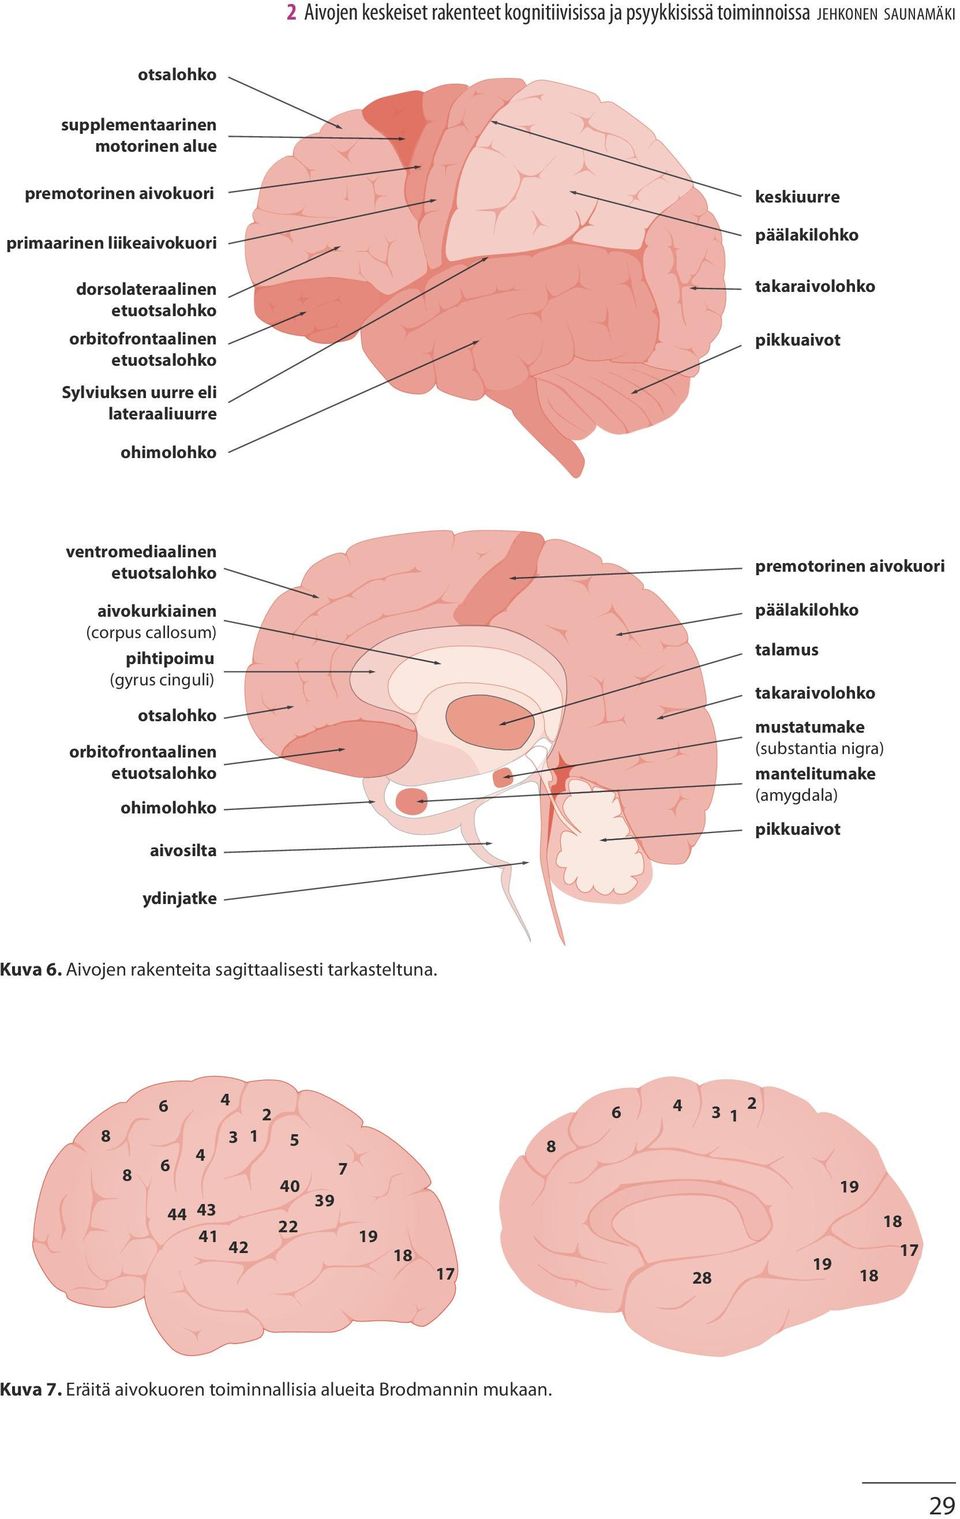 aivokurkiainen (corpus callosum) pihtipoimu (gyrus cinguli) otsalohko orbitofrontaalinen etuotsalohko ohimolohko aivosilta premotorinen aivokuori päälakilohko talamus takaraivolohko mustatumake